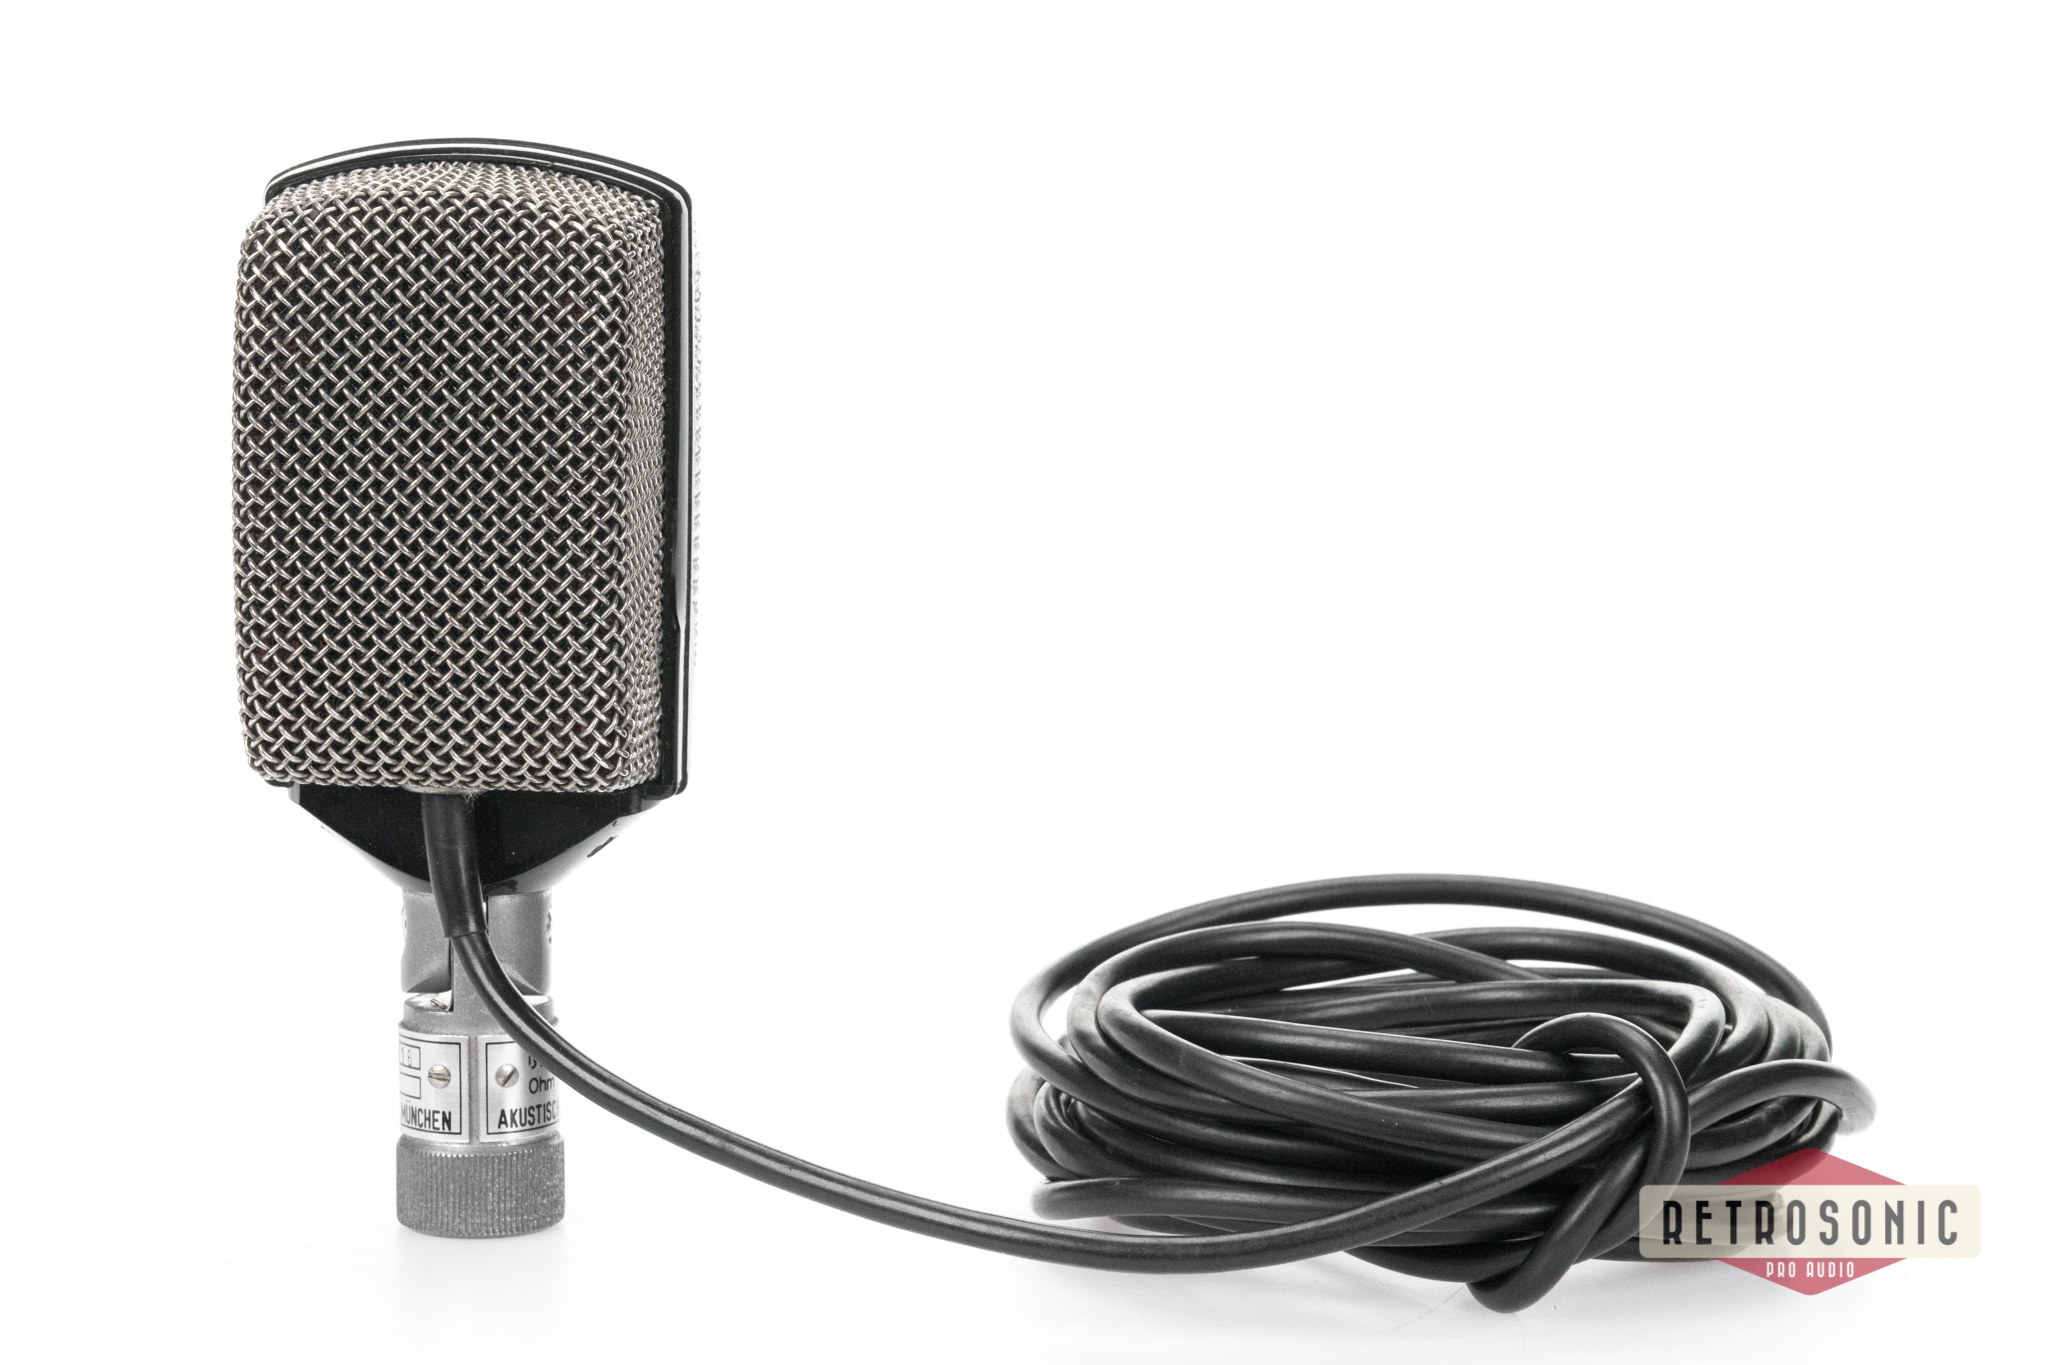 AKG D12 Dynamic Microphone